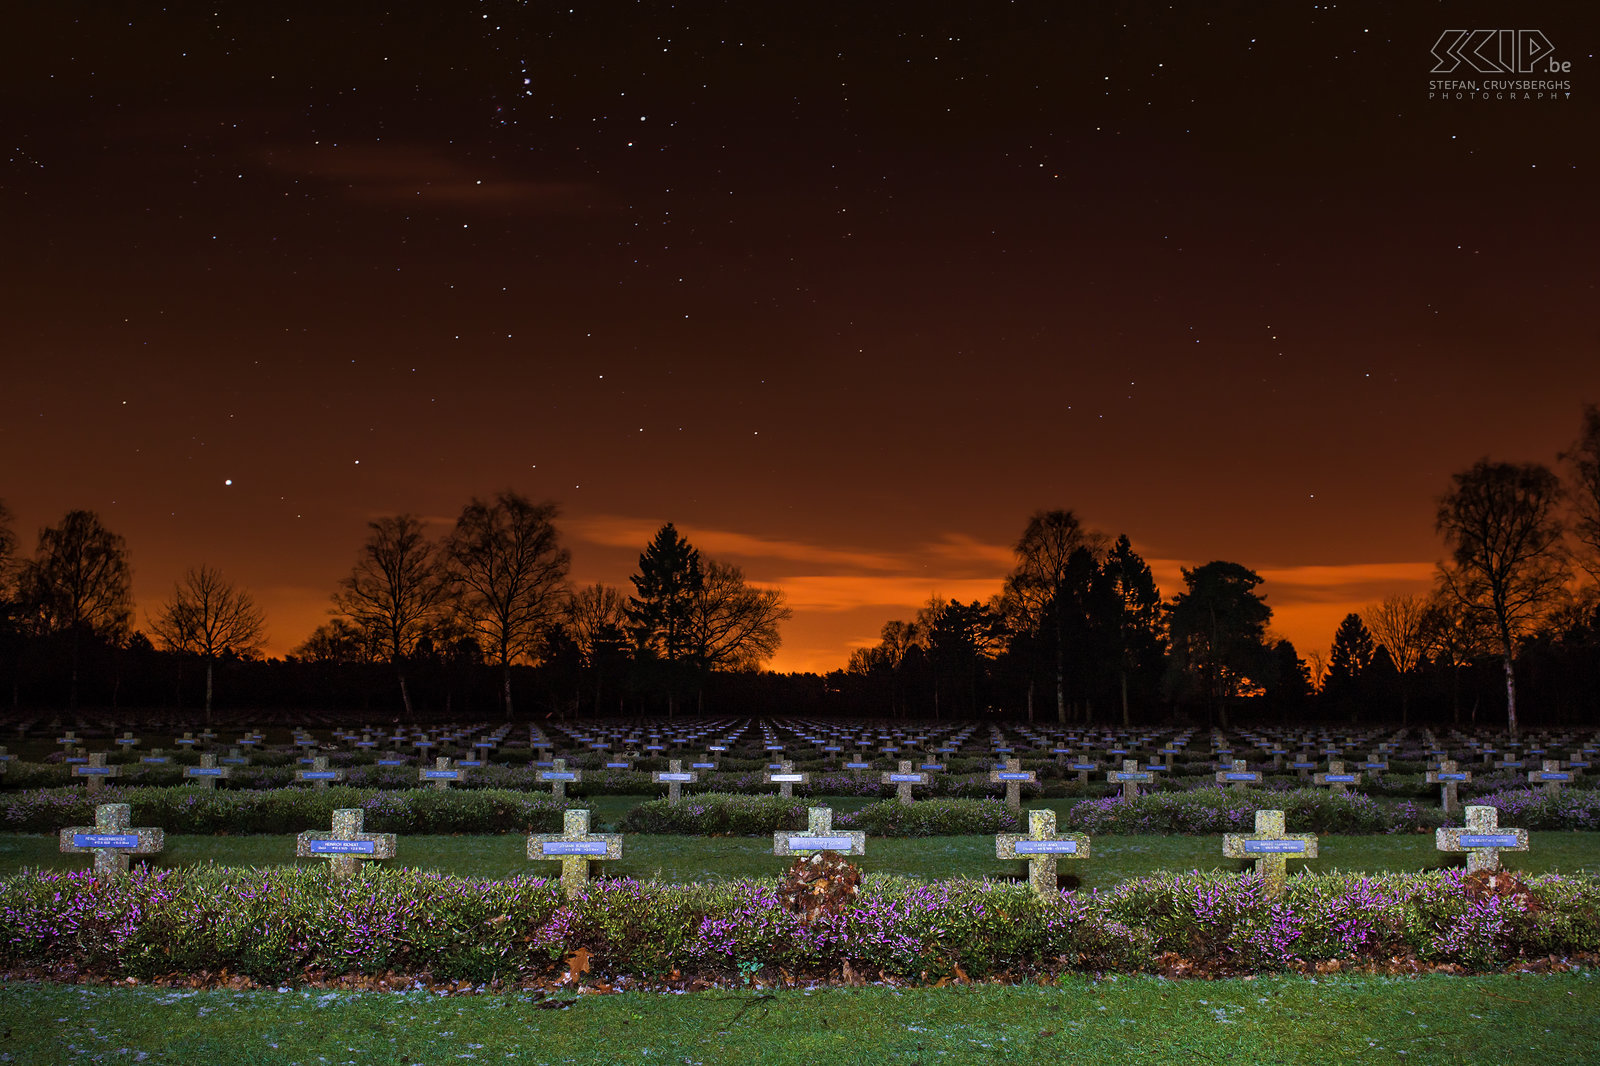 Lommel by night - Duits oorlogskerkhof De Duitse oorlogsbegraafplaats in Lommel is een van de grootste soldatenkerkhoven uit de 2de wereldoorlog en er liggen 39.091 gesneuvelde Duitse soldaten. Stefan Cruysberghs